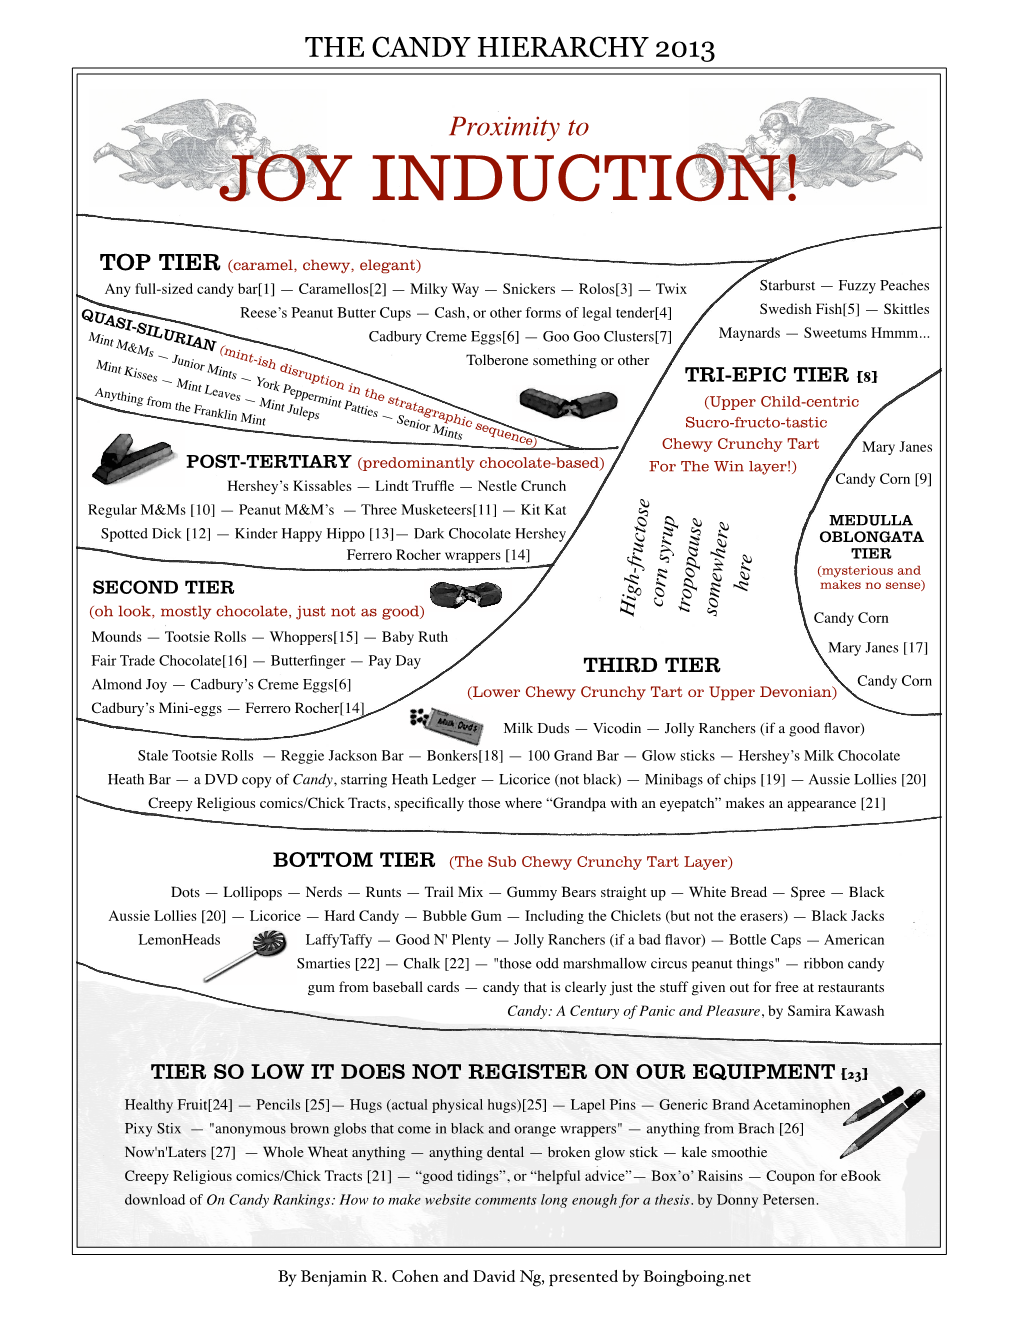 Joy Induction!